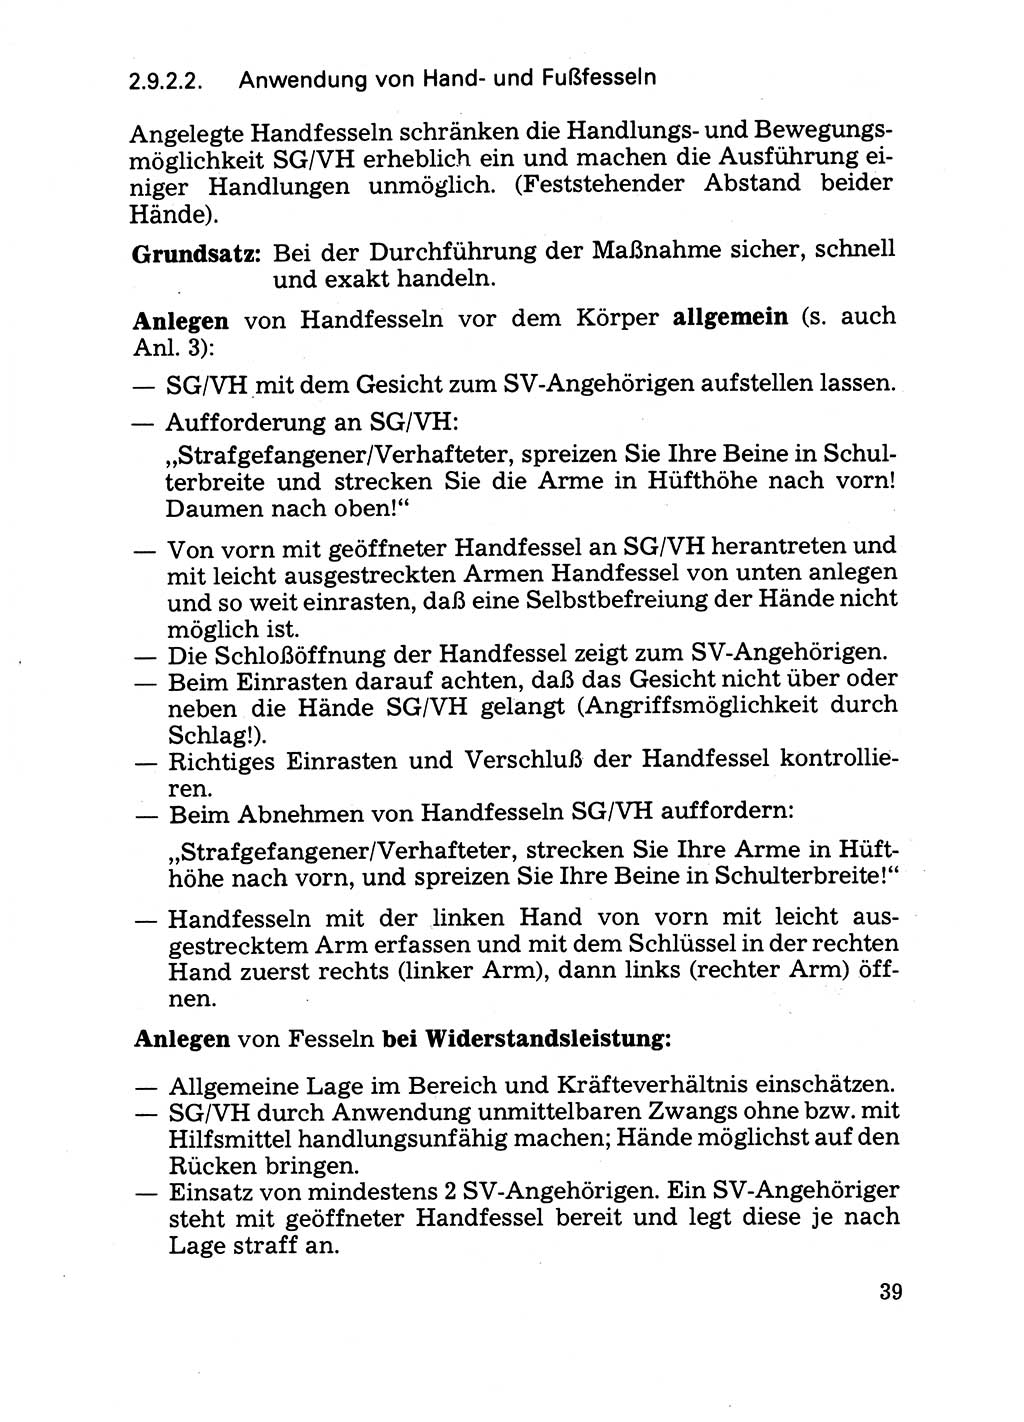 Handbuch für operative Dienste, Abteilung Strafvollzug (SV) [Ministerium des Innern (MdI) Deutsche Demokratische Republik (DDR)] 1981, Seite 39 (Hb. op. D. Abt. SV MdI DDR 1981, S. 39)